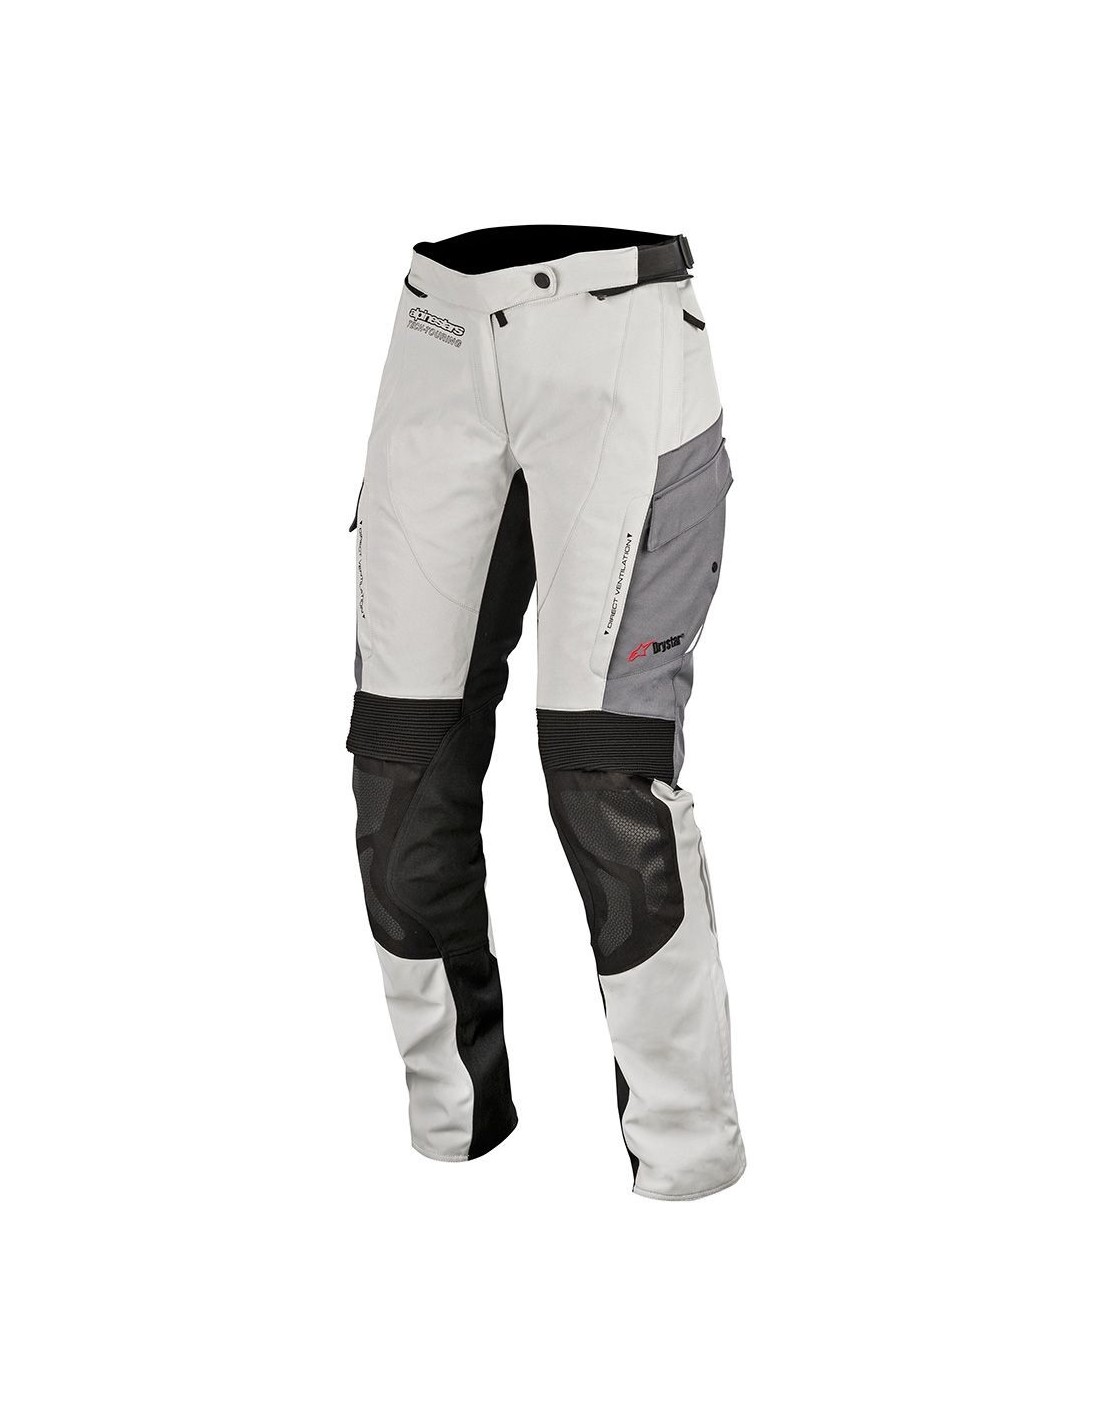 Prezzo del pantalone moto alpinestars stella andes v3 drystar pants white